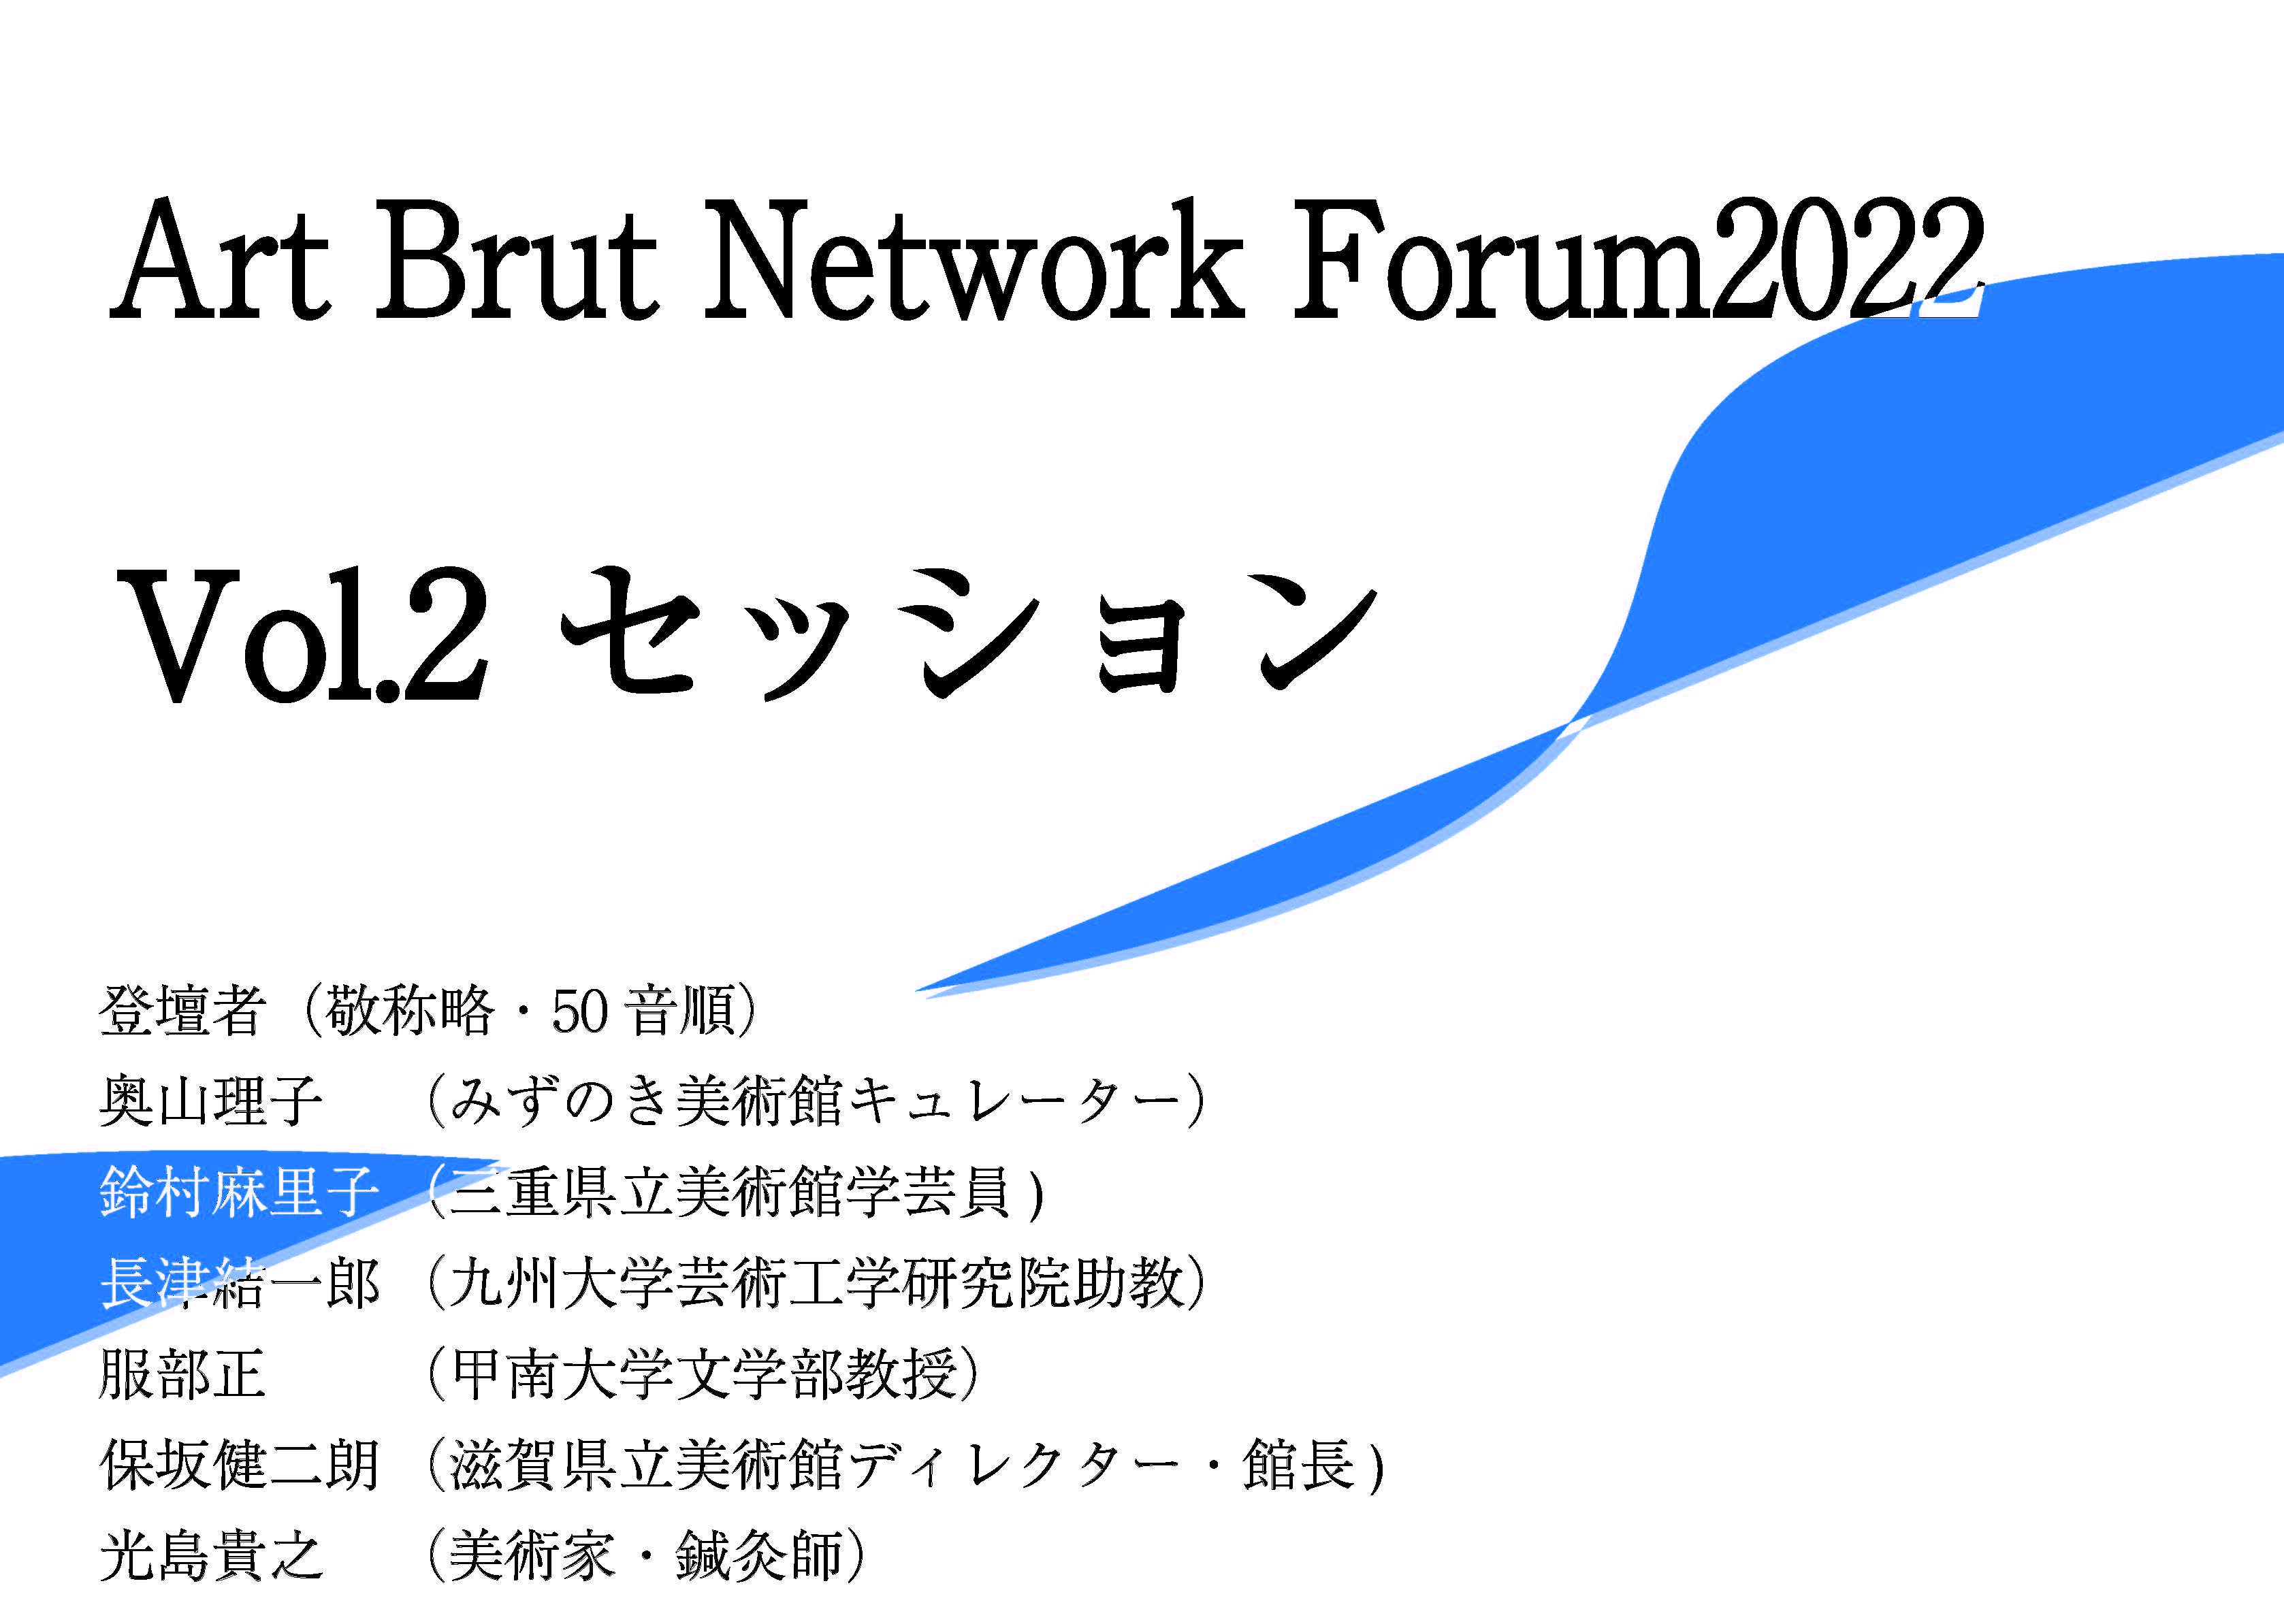 アール・ブリュットネットワークフォーラム2022後半に行われた登壇者によるセッションの映像リンクが付与された画像